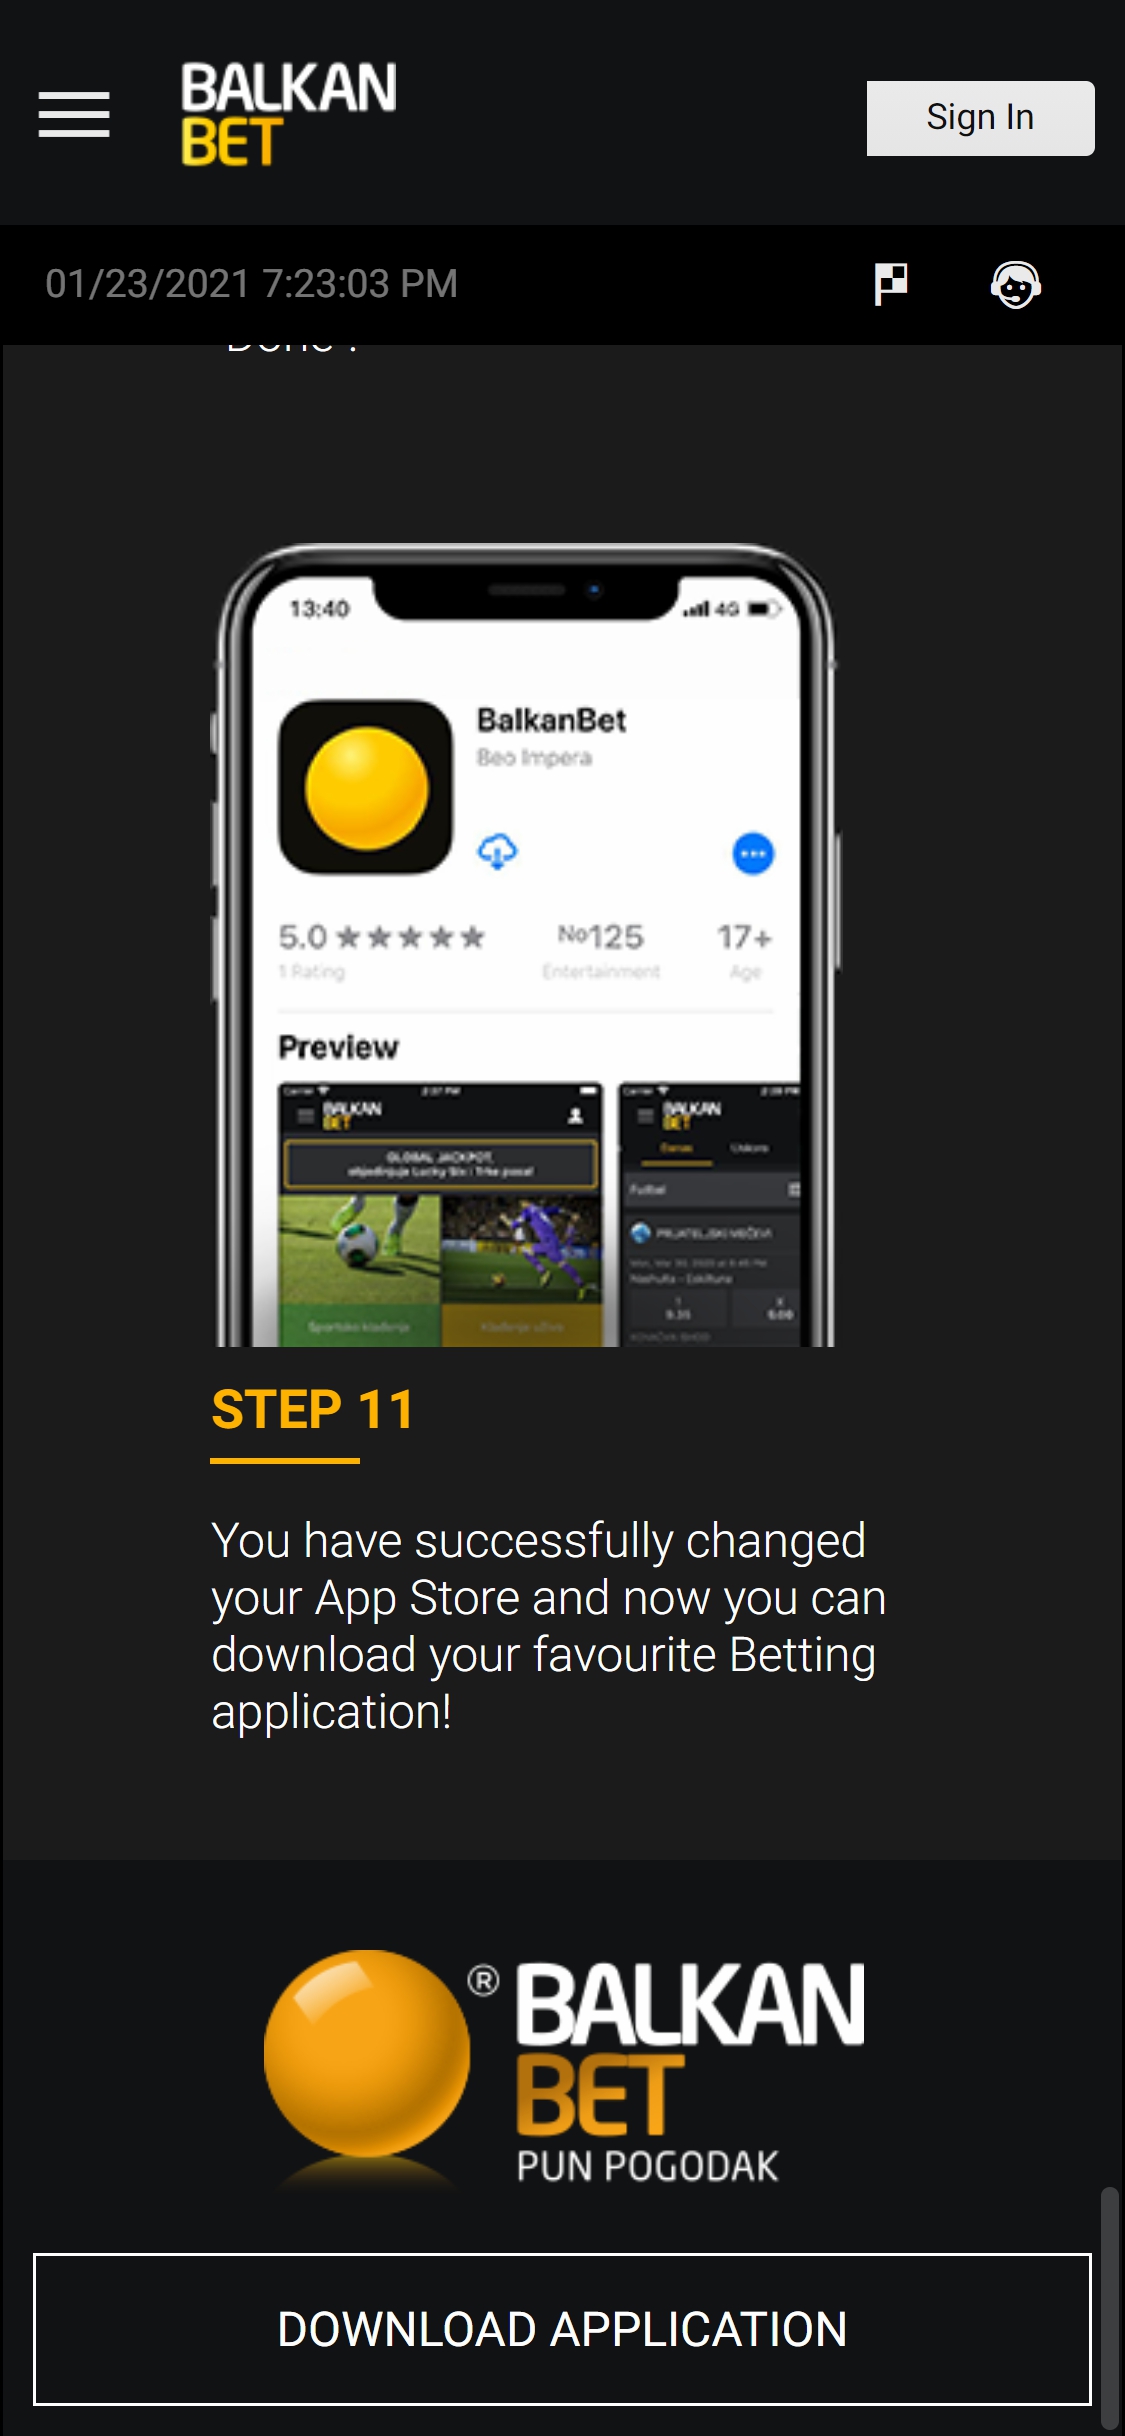 Balkan Bet Casino Mobile App Review